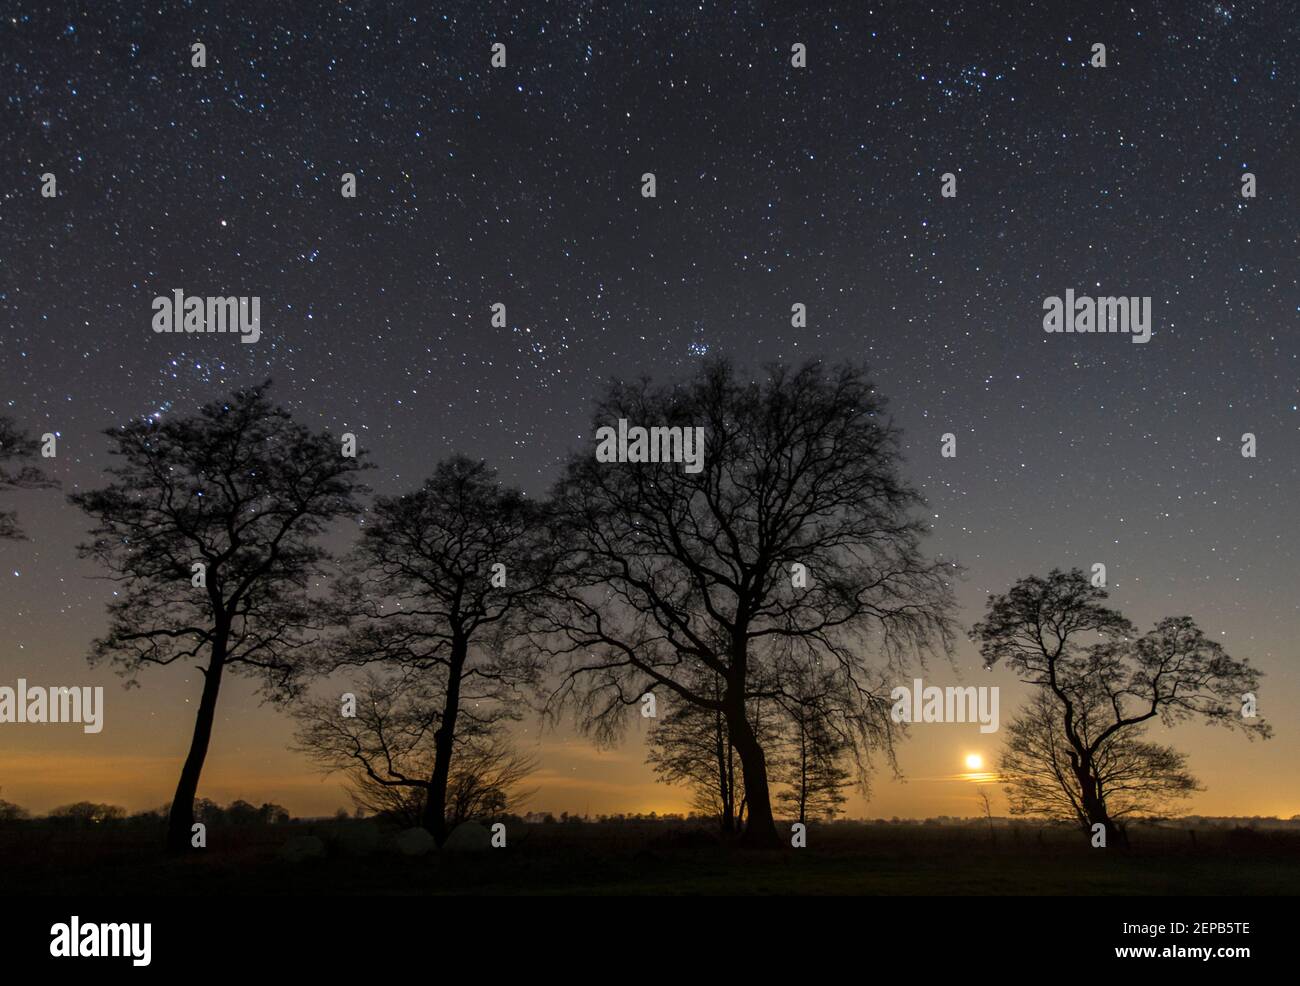 Boller Moor, Sternenhimmel, Nacht, Baeume, Silhouetten, Stock Photo